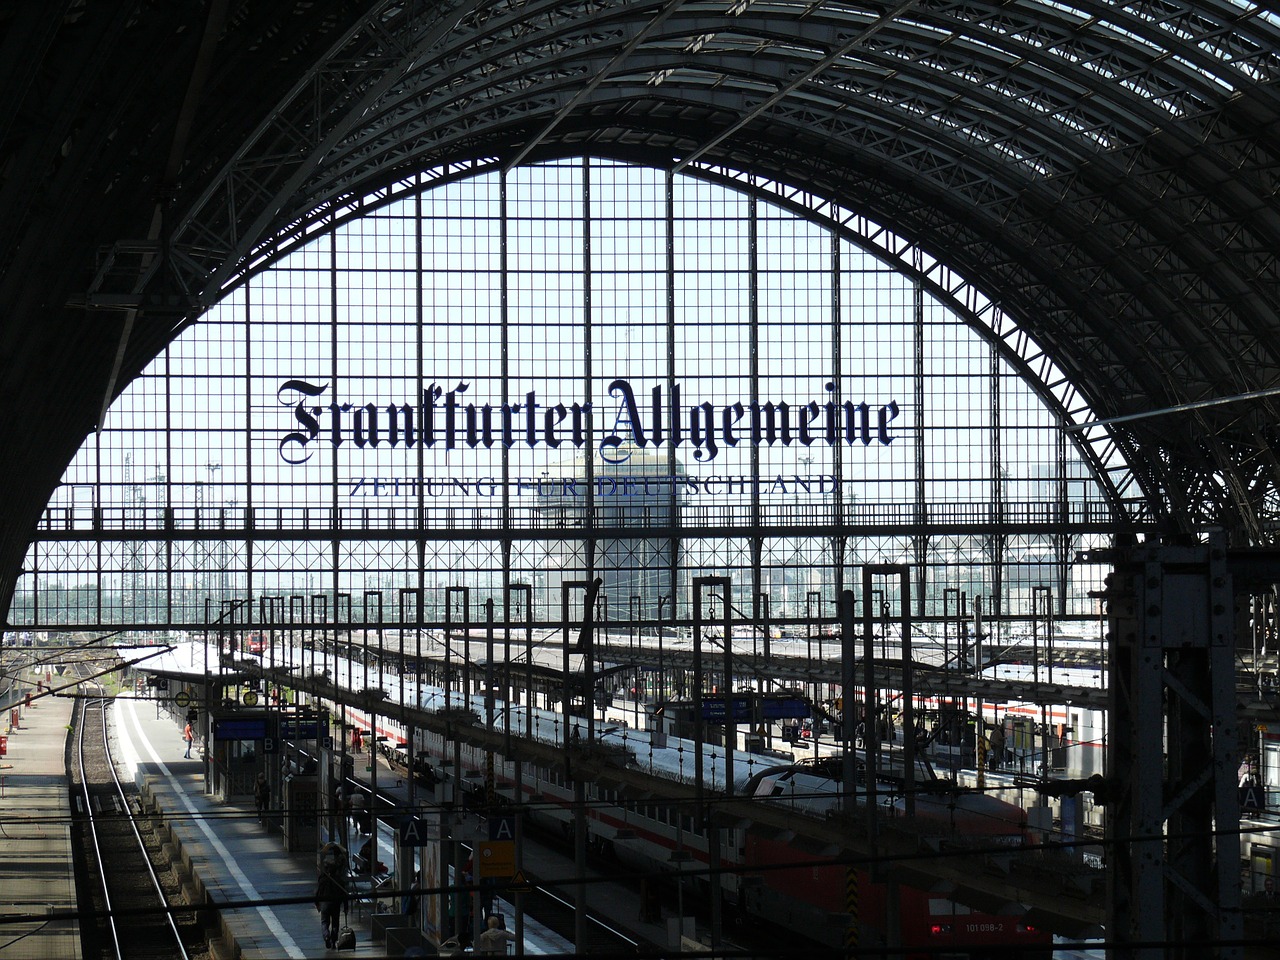 Traukinys, Traukinių Stotis, Banko Miestas, Vokietija, Nuotolinis Eismas, Frankfurtas, Gleise, Centrinė Stotis, Hesse, Transportas